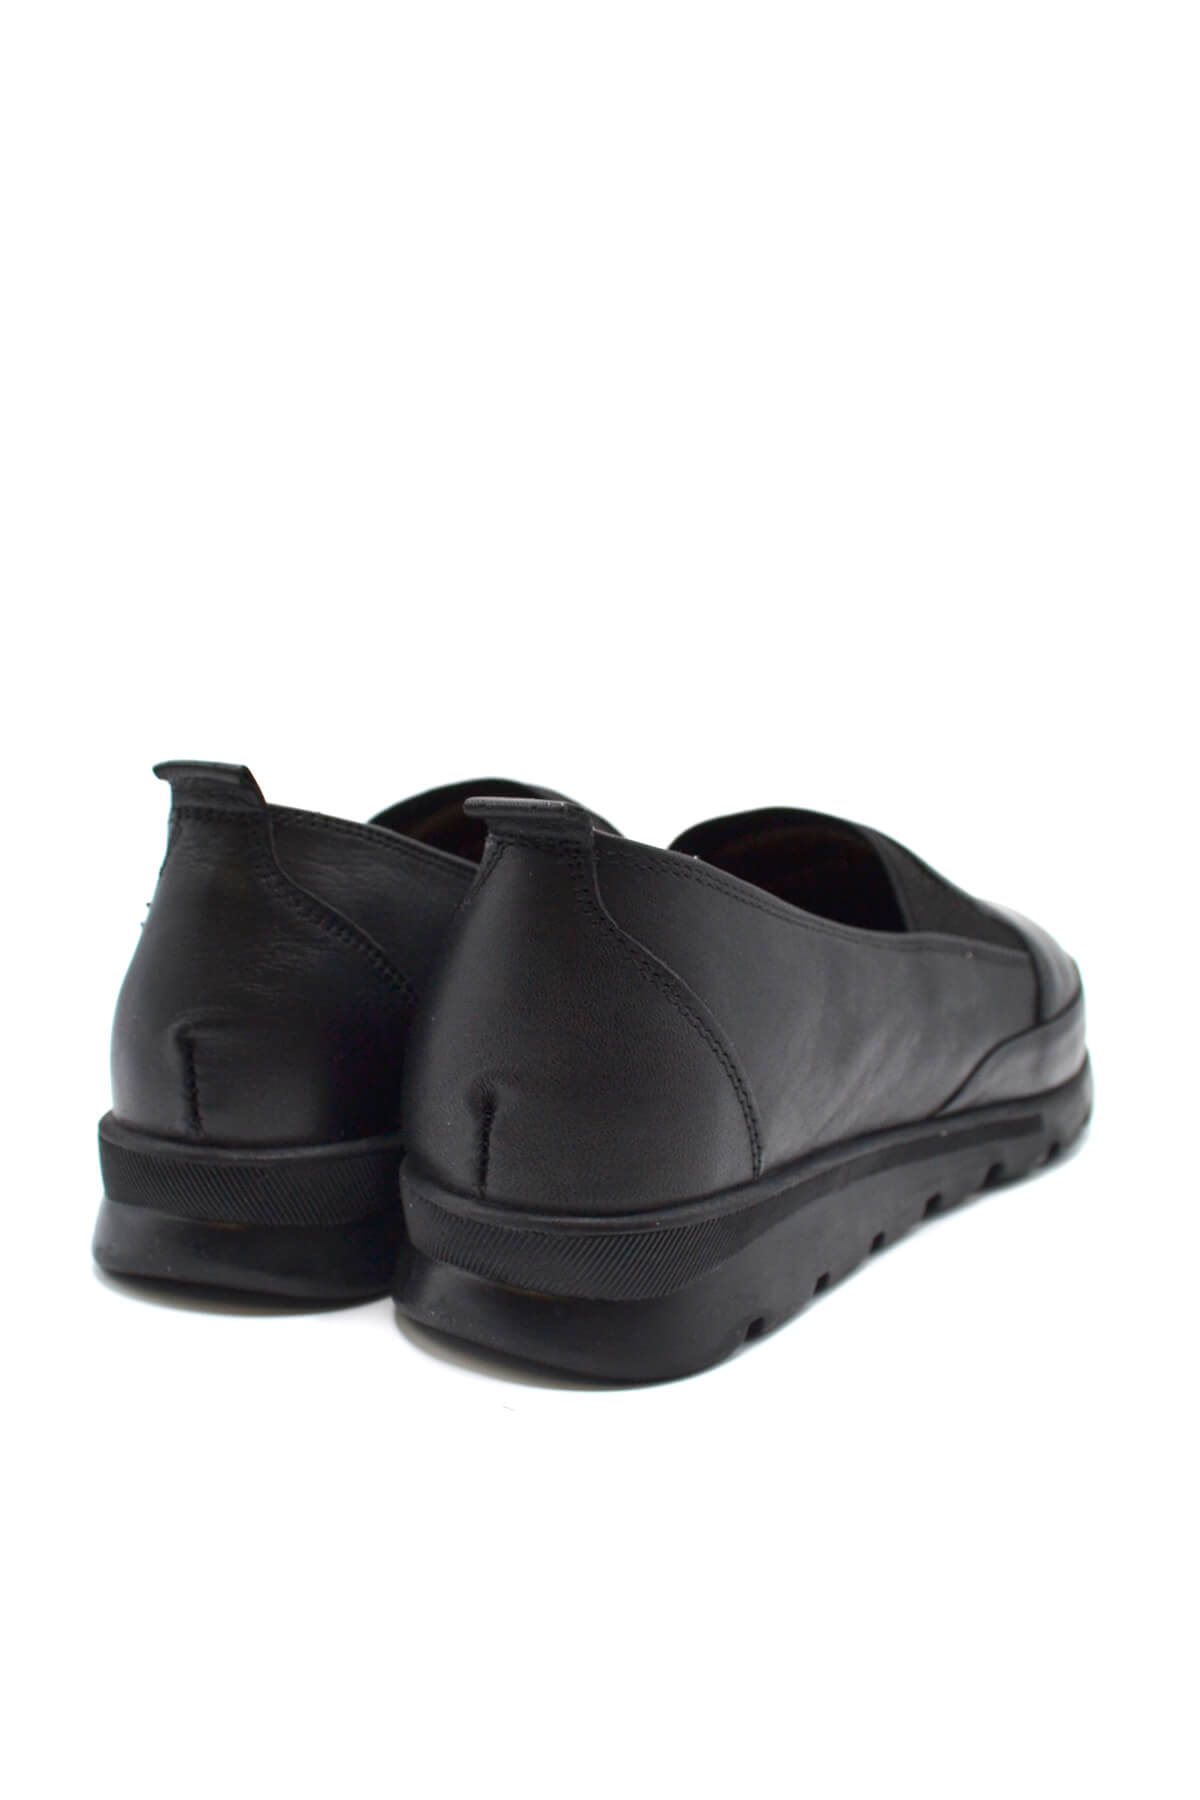 Kadın Comfort Deri Ayakkabı Siyah 2224709K - Thumbnail